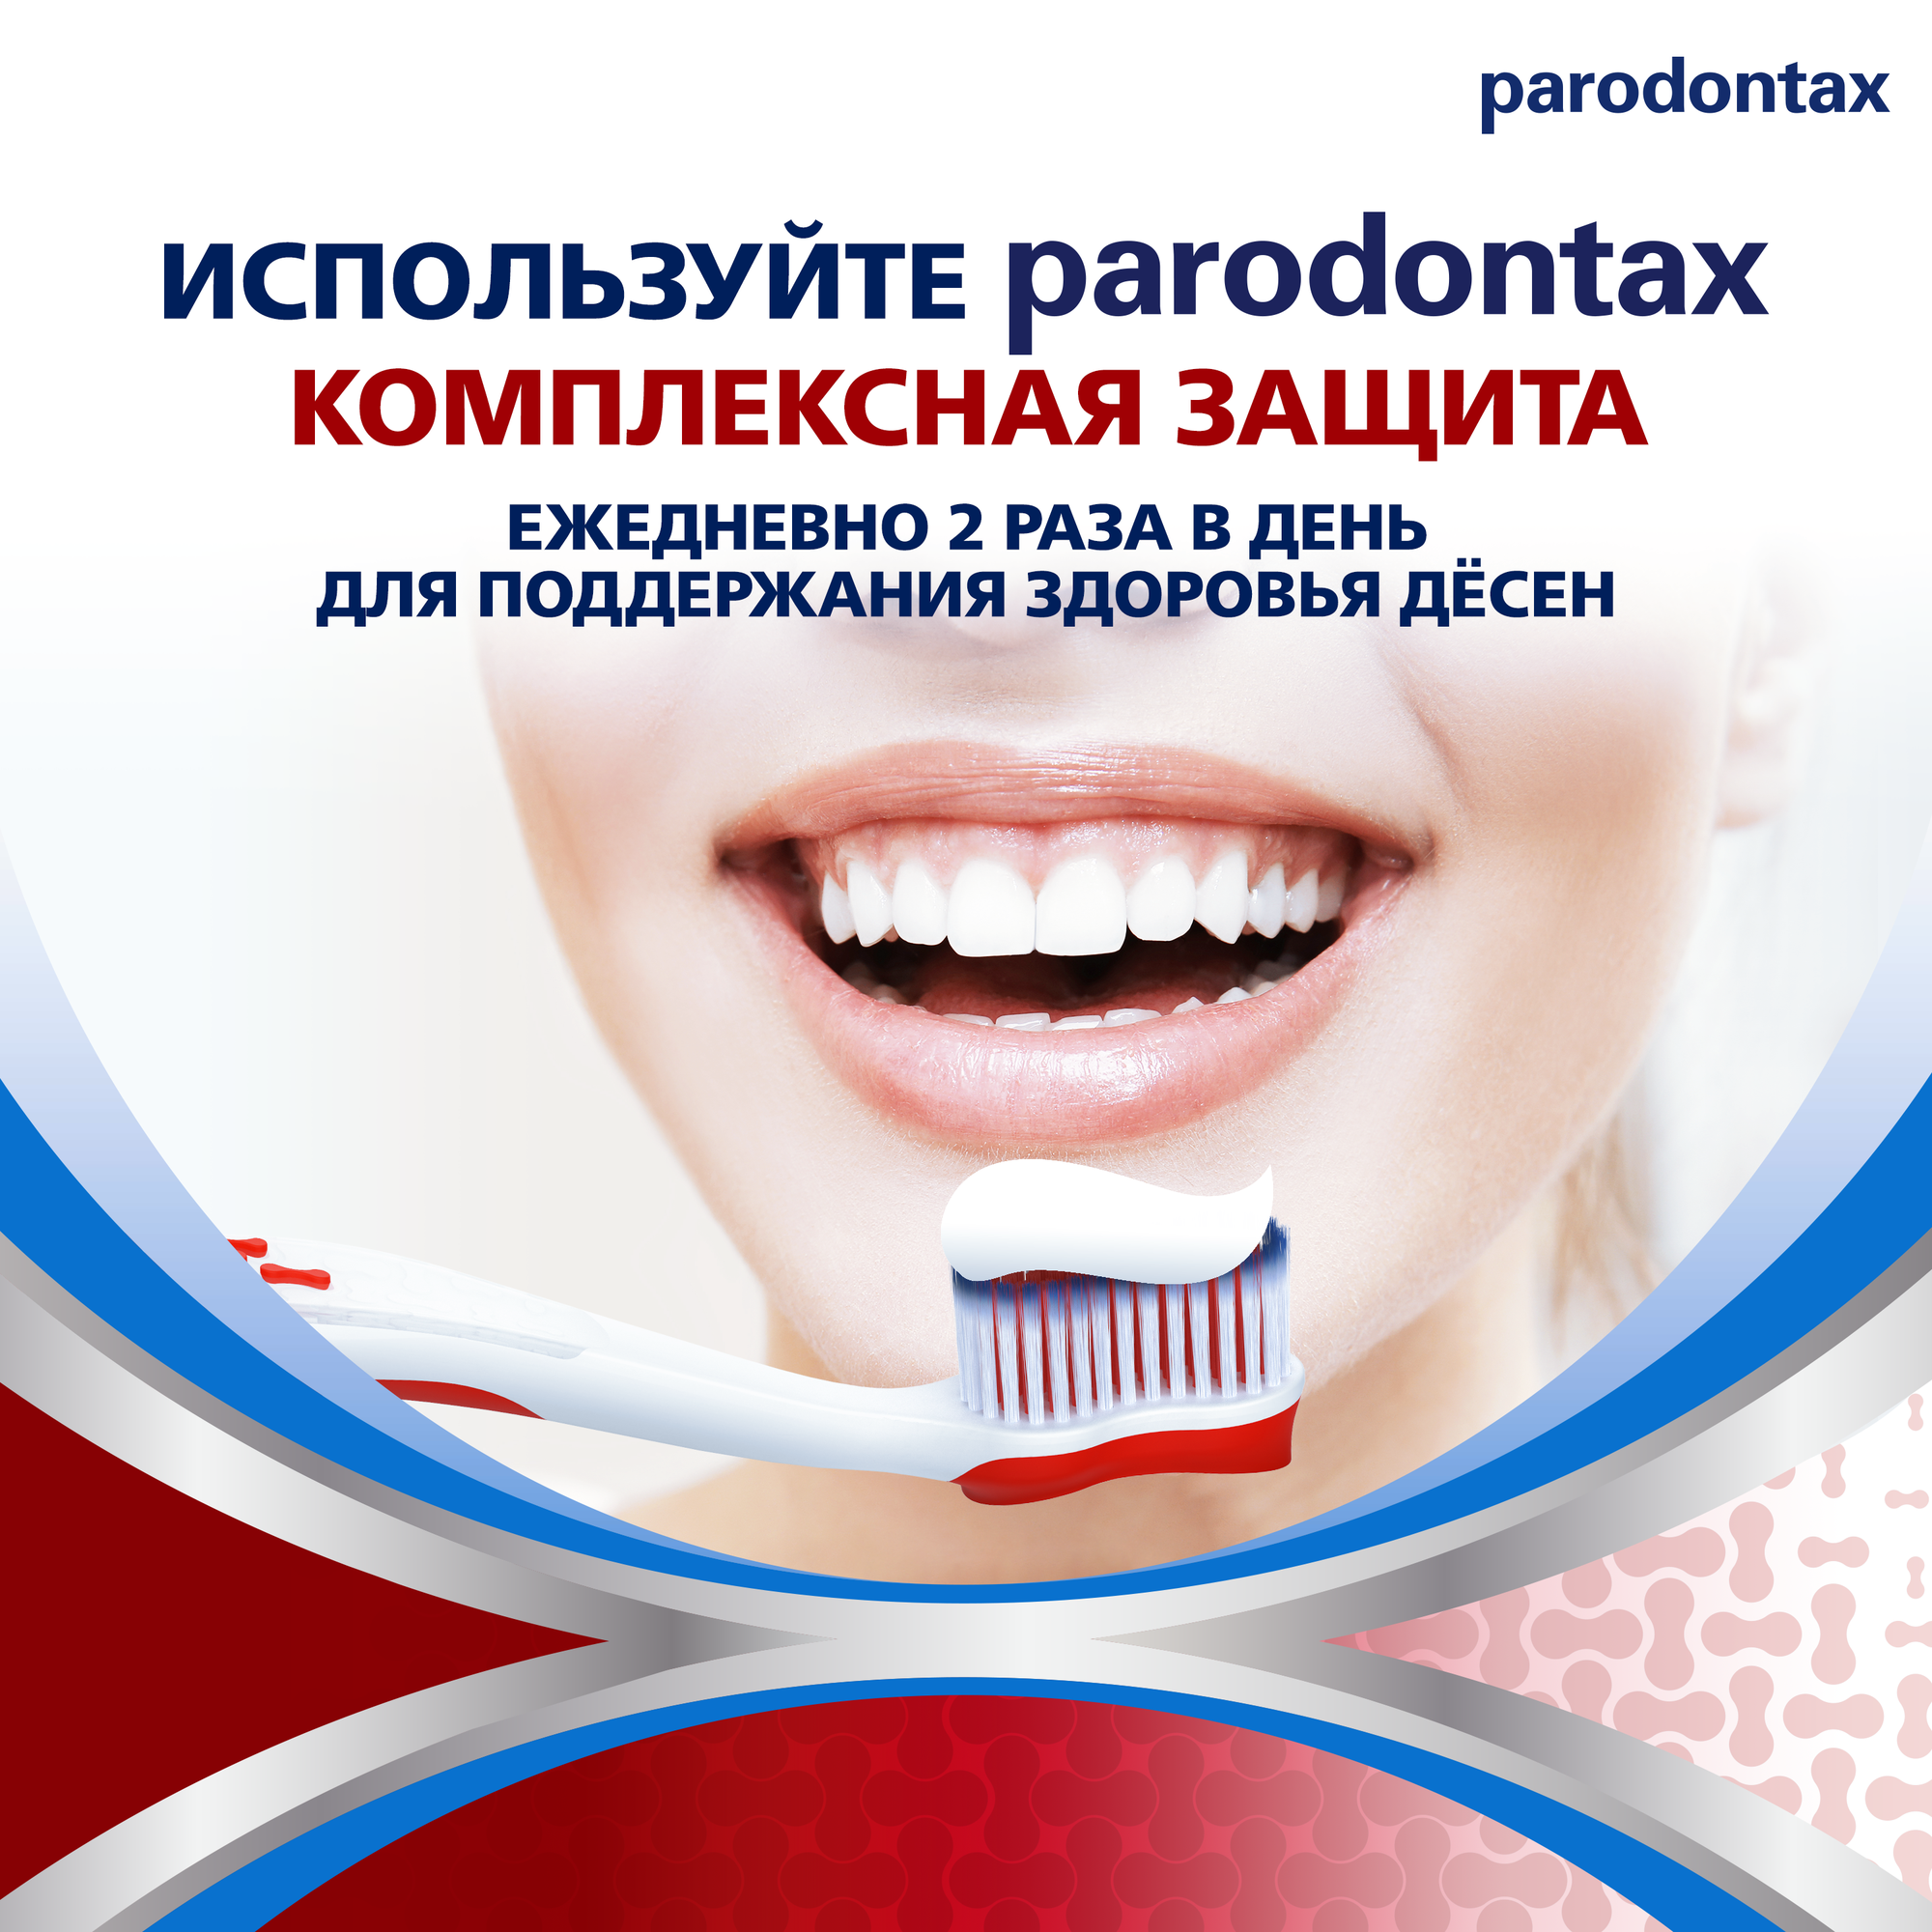 Зубная паста parodontax Комплексная Защита, для удаления зубного налета, укрепления зубов, поддержания здоровья десен, с фтором, 75мл*2шт